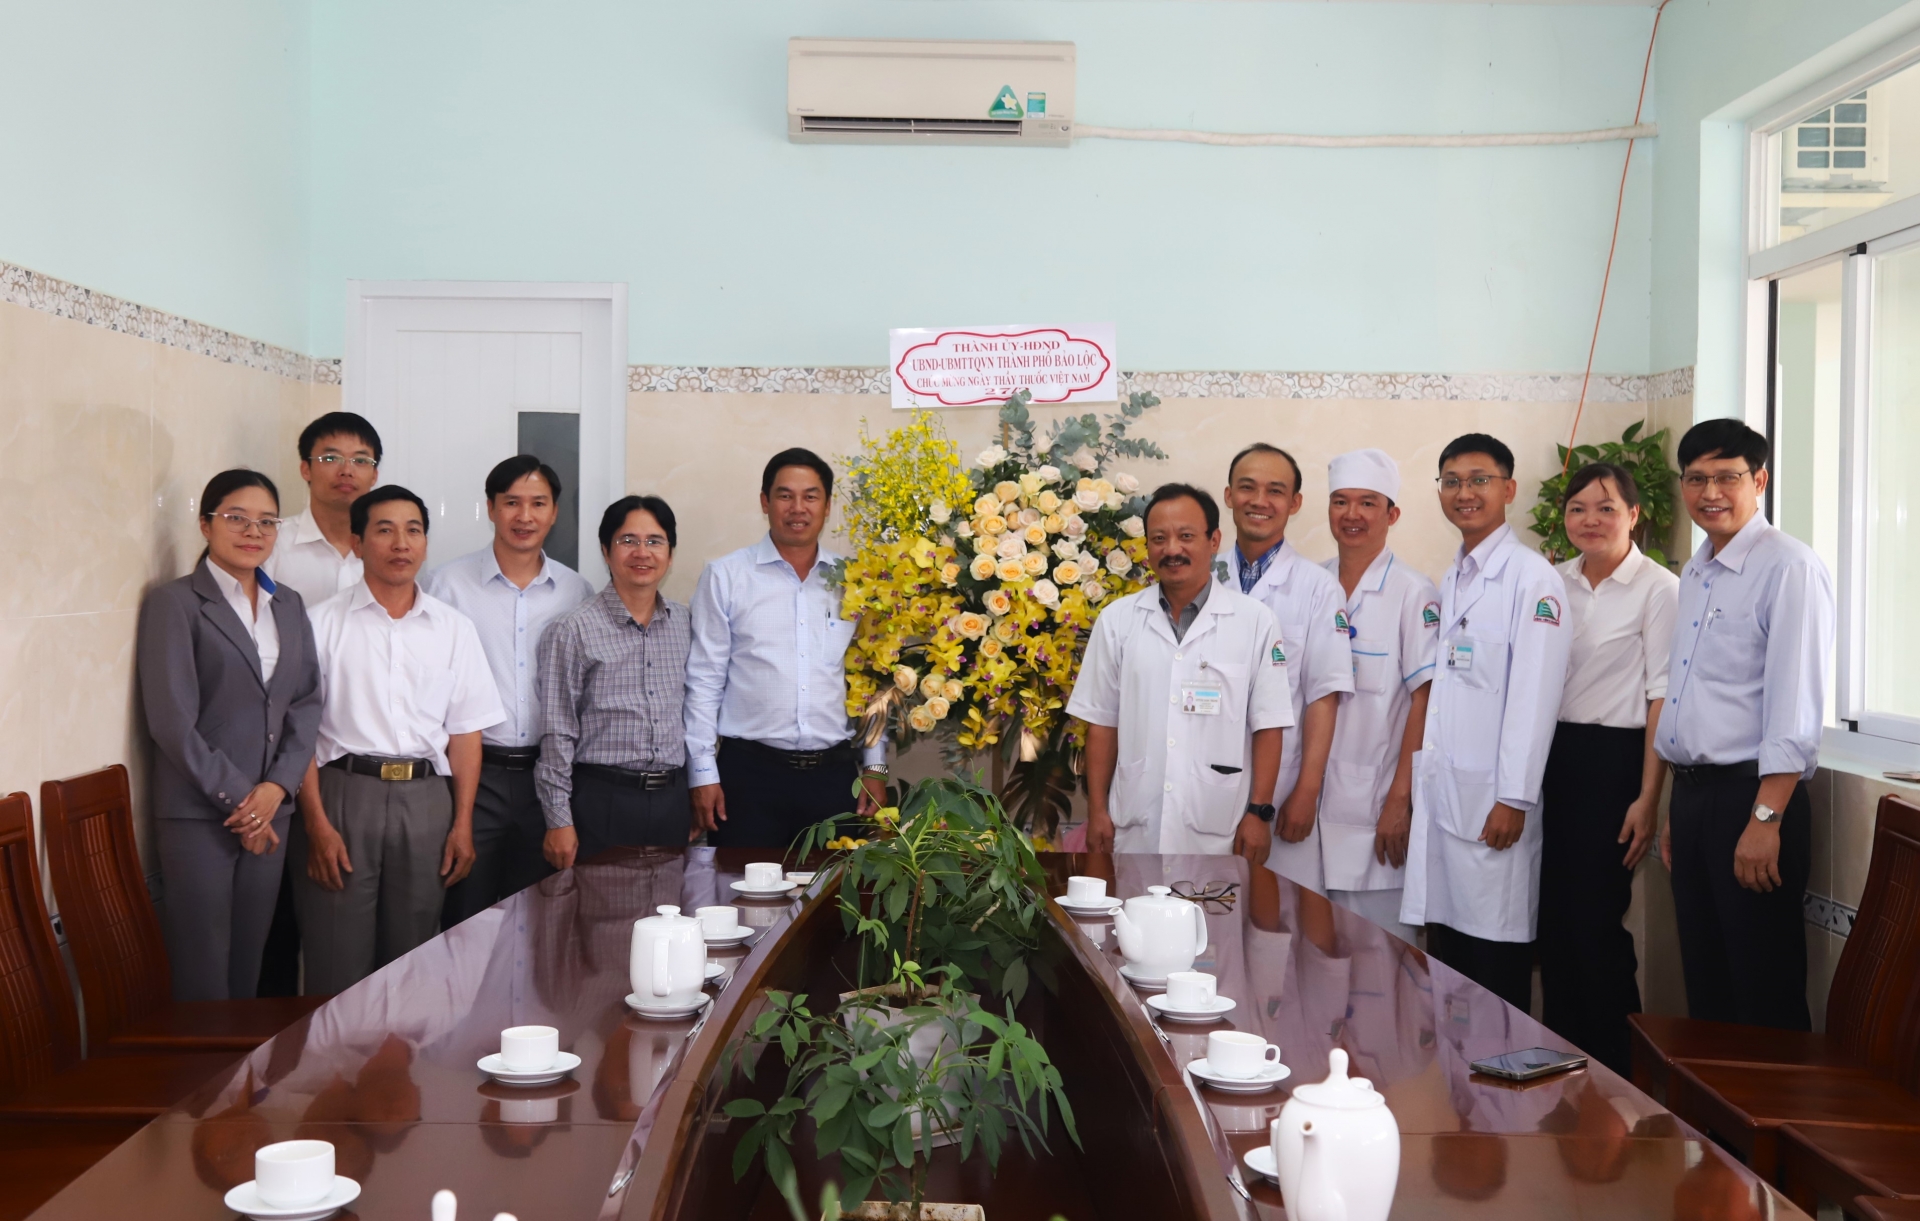 Đồng chí Nghiêm Xuân Đức - Phó Bí thư Thường trực Thành ủy, Chủ tịch HĐND TP Bảo Lộc tới thăm, chúc mừng Bệnh viện II Lâm Đồng